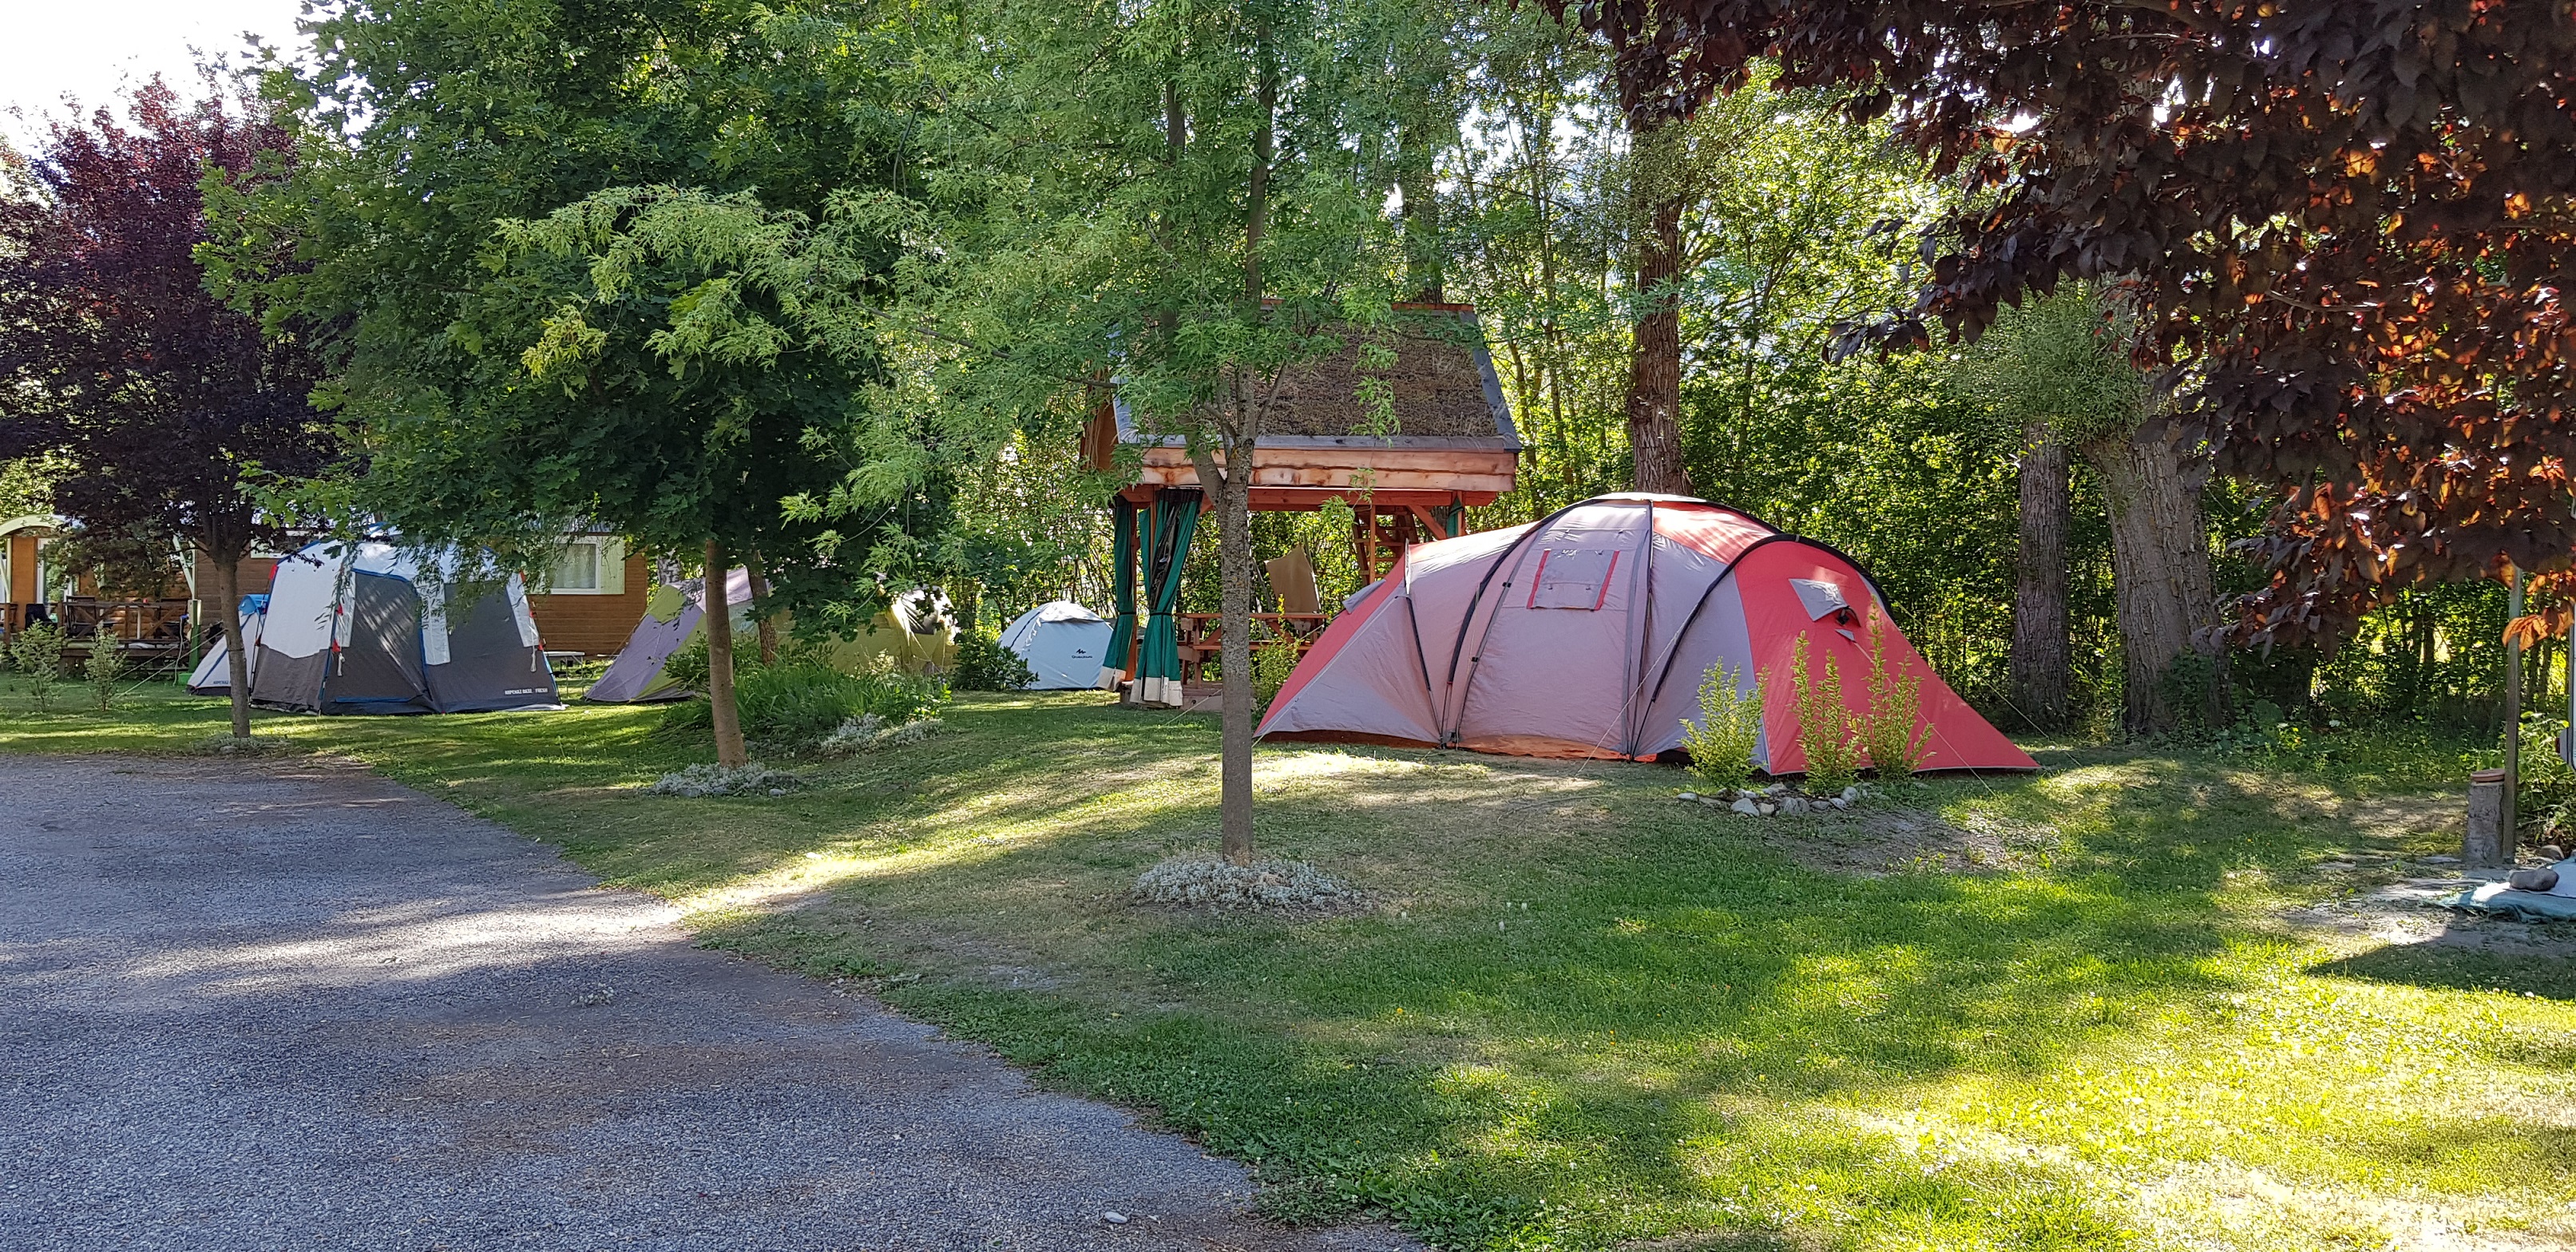 Pakket Standplaats + tent, caravan, camper -